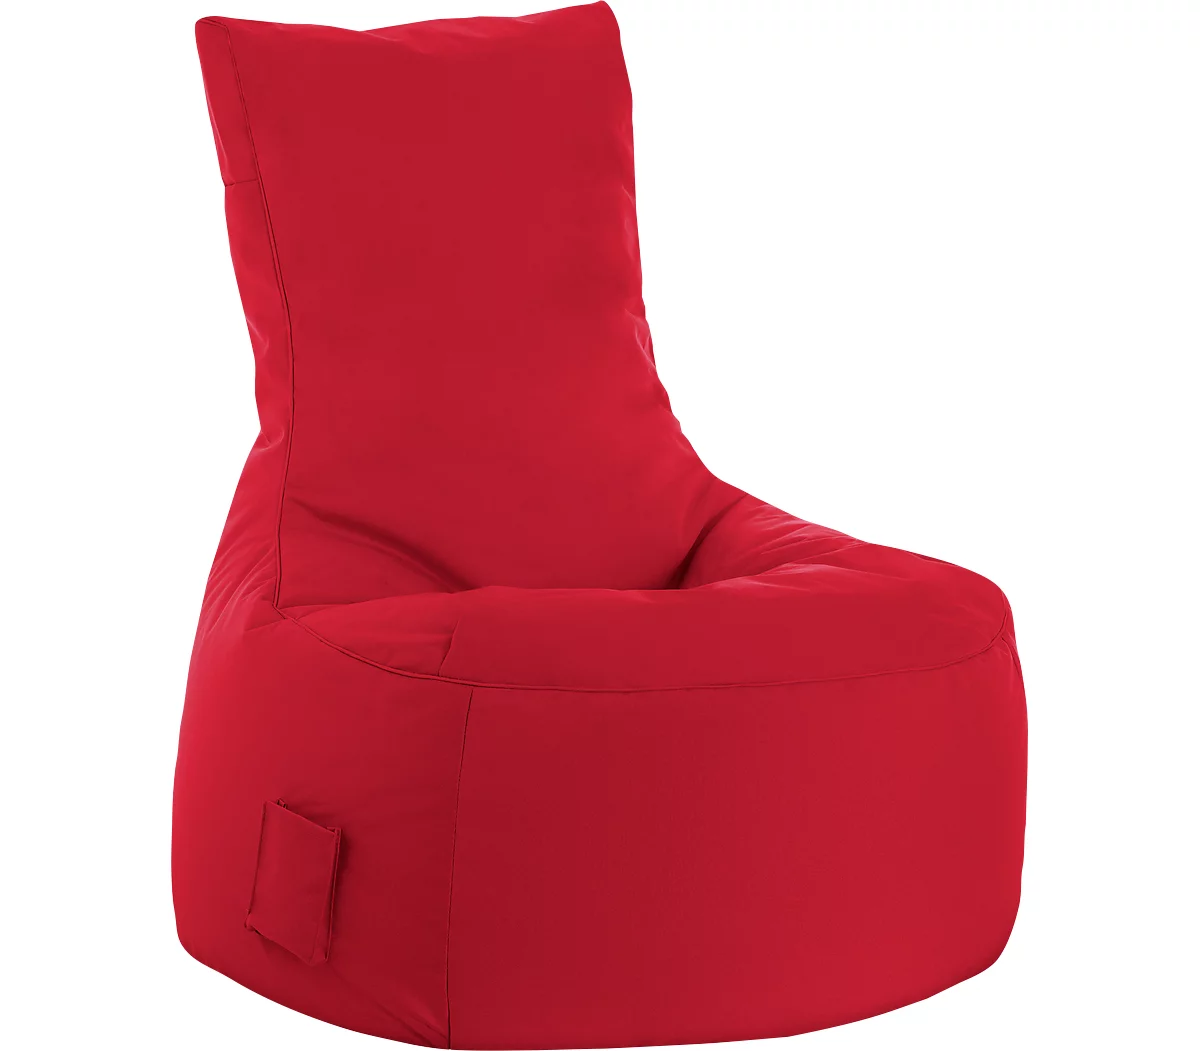 Sitzsack swing scuba®, 100% Polyester, abwaschbar, B 650 x T 900 x H 950 mm, rot